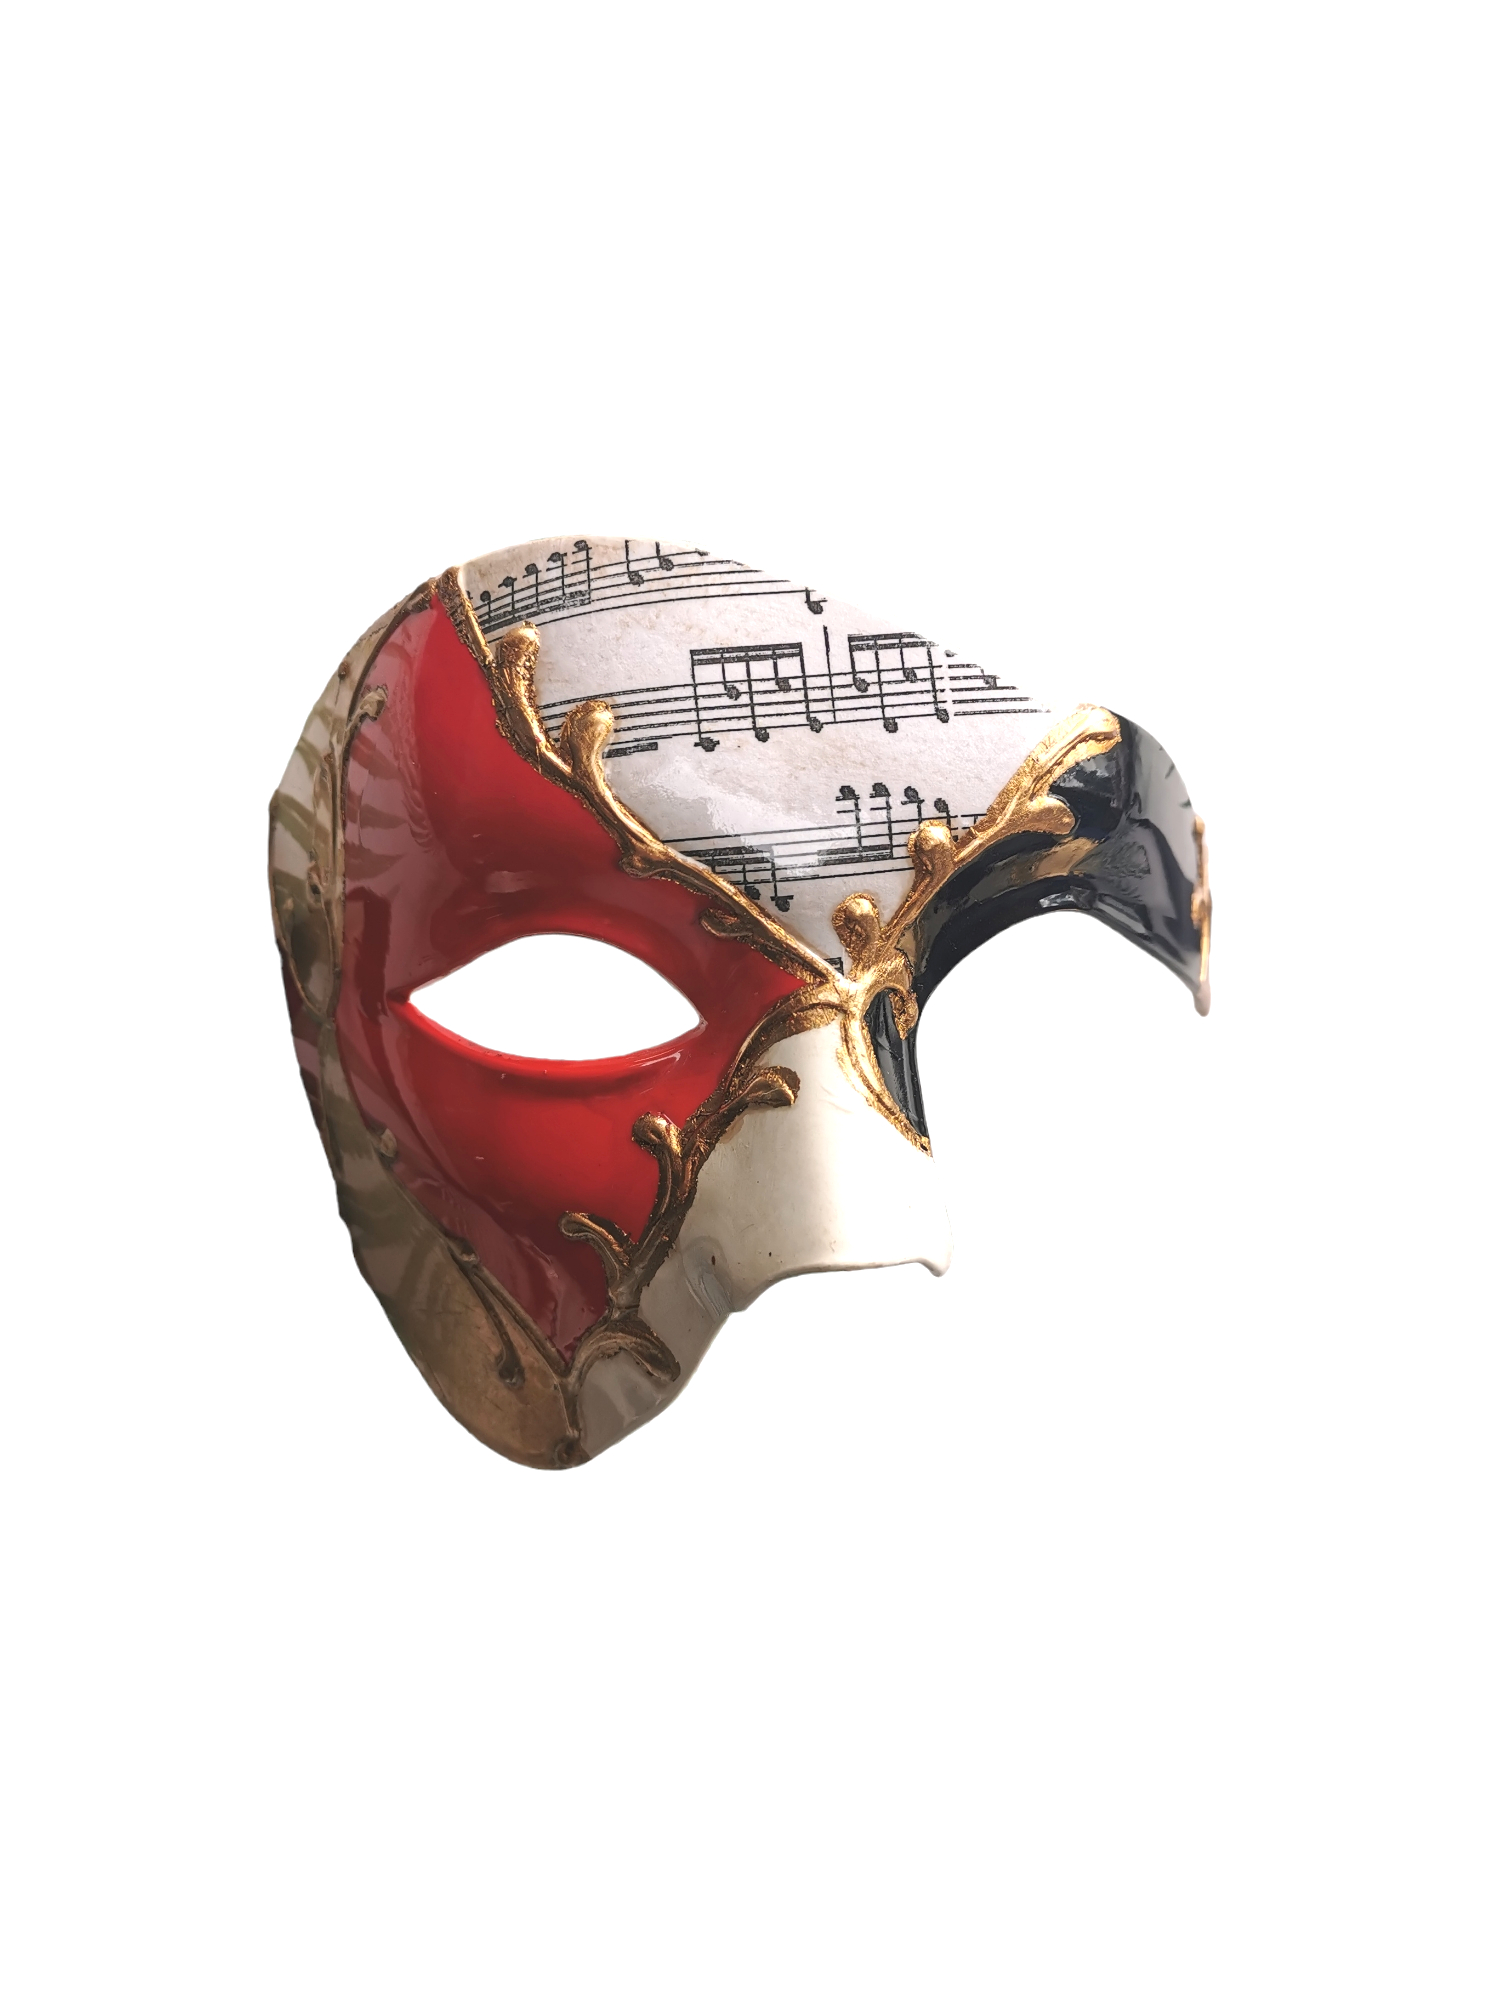 Harlequin Venetian Mask